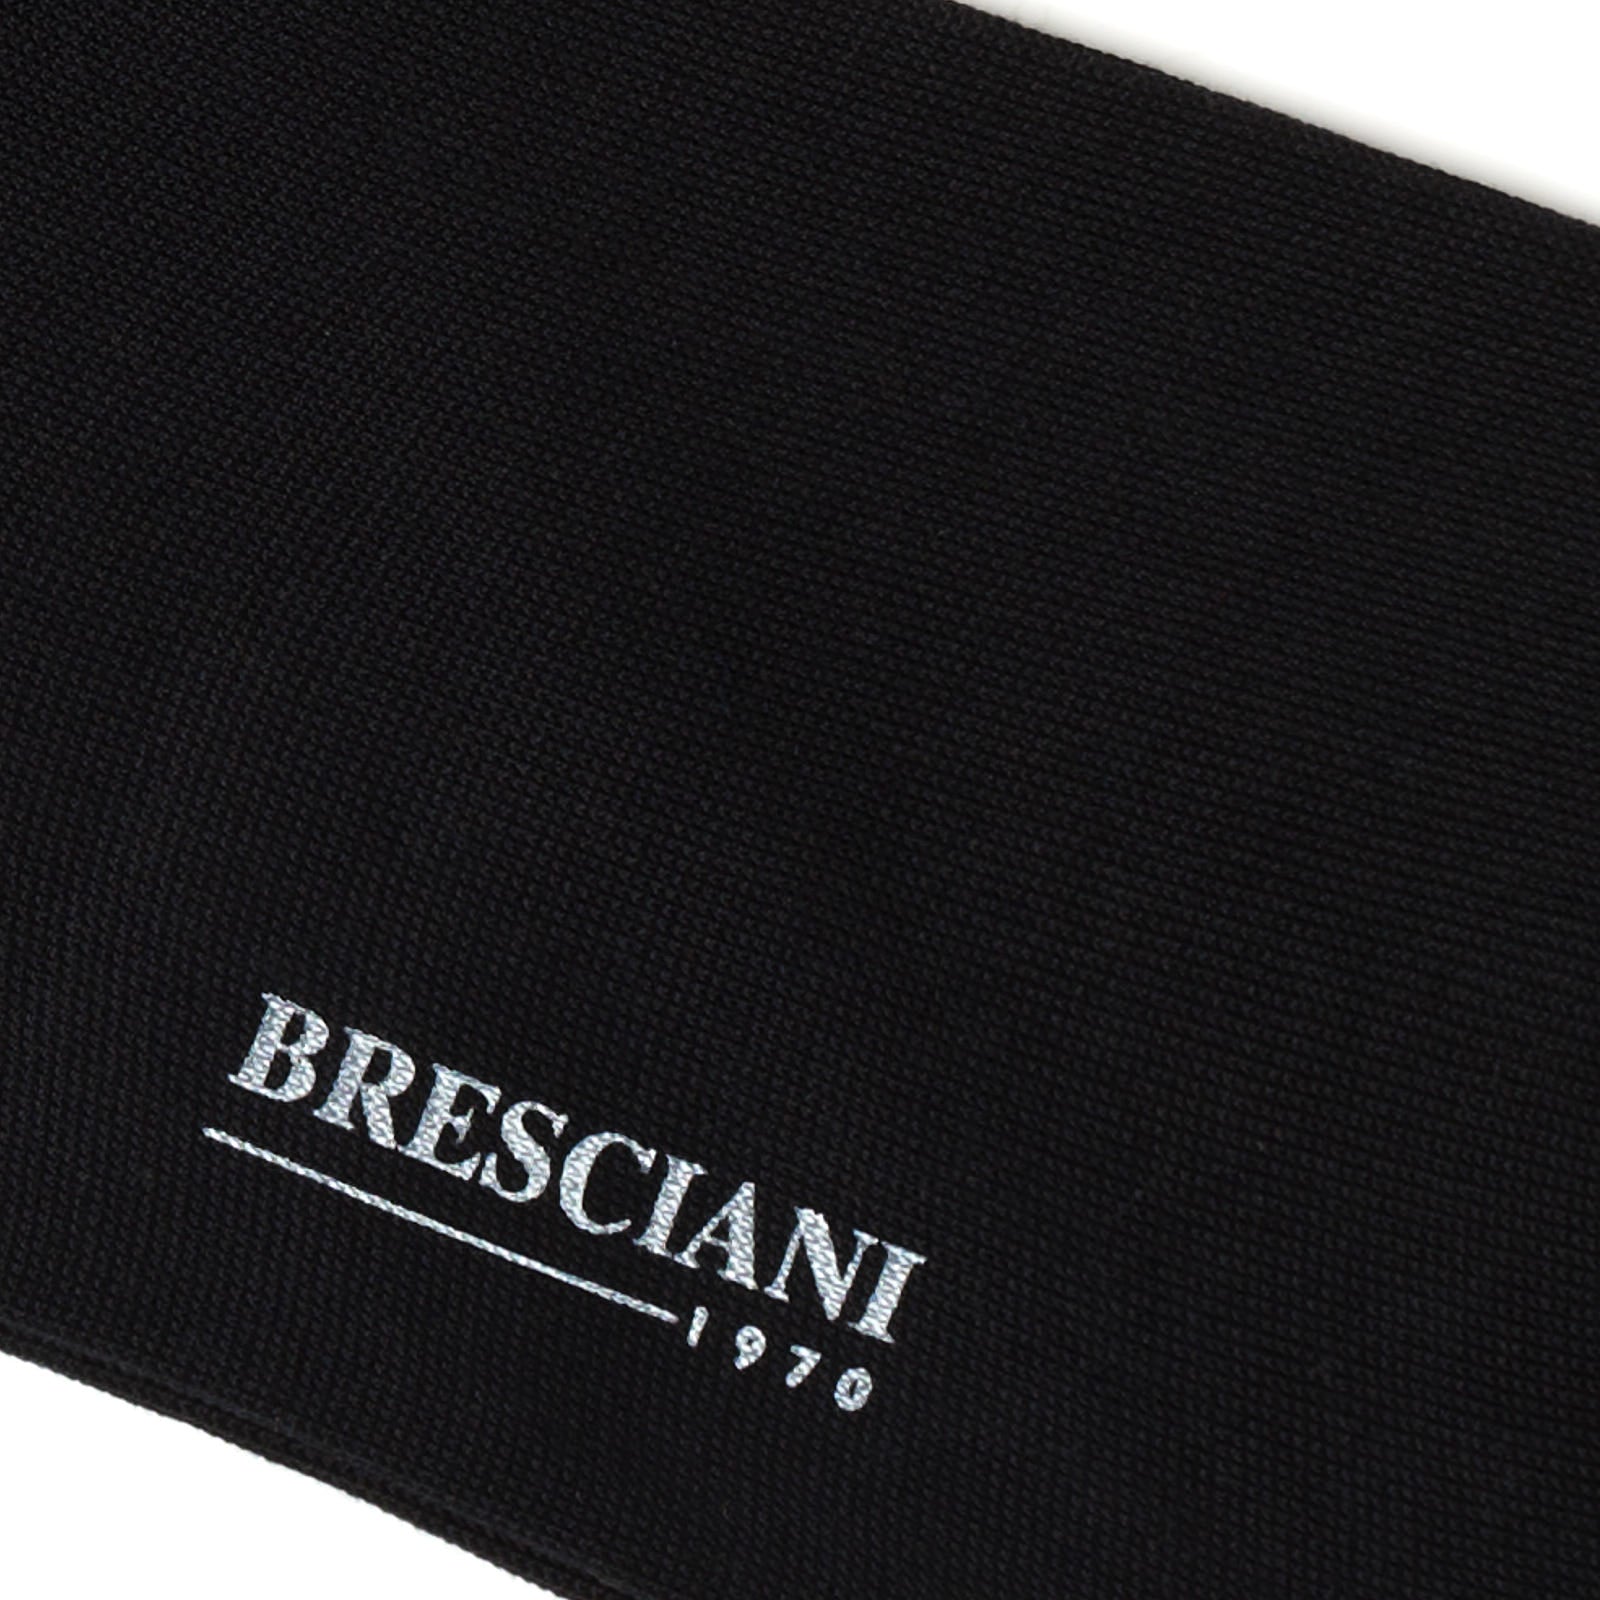 BRESCIANI "Lorenzo" Cotton Mid Calf Length Socks M-L BRESCIANI